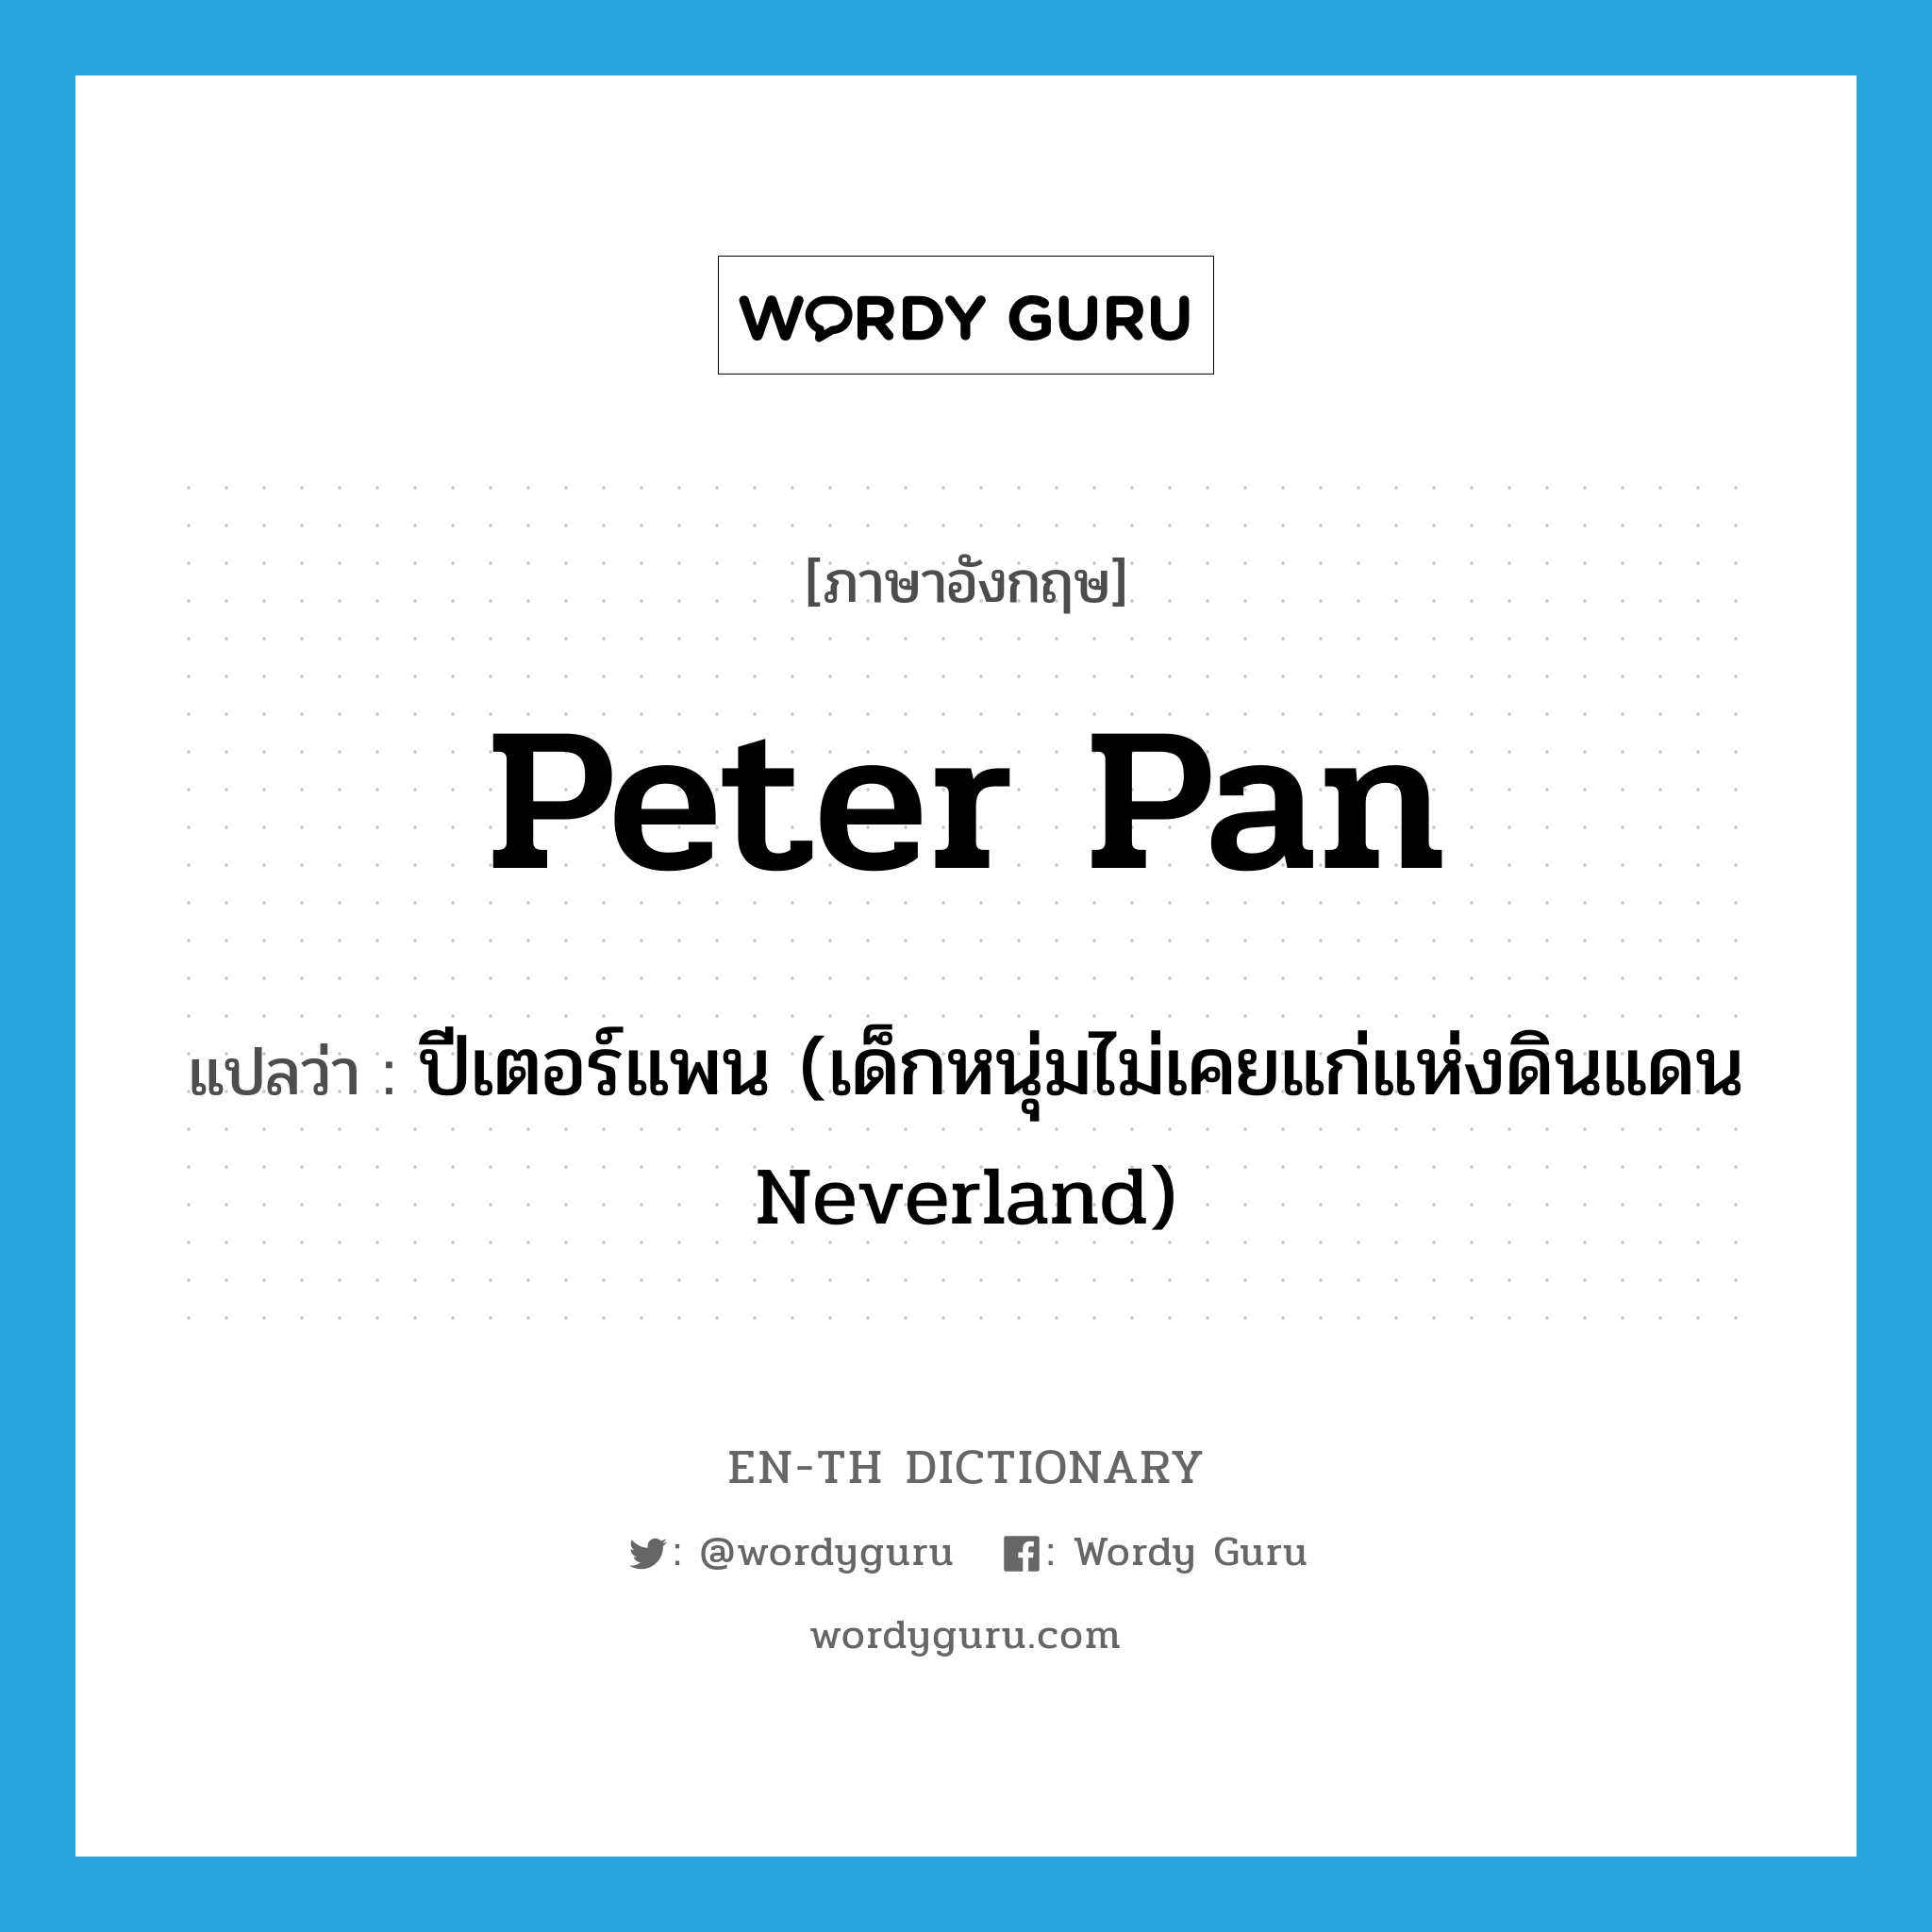 ปีเตอร์แพน (เด็กหนุ่มไม่เคยแก่แห่งดินแดน Neverland) ภาษาอังกฤษ?, คำศัพท์ภาษาอังกฤษ ปีเตอร์แพน (เด็กหนุ่มไม่เคยแก่แห่งดินแดน Neverland) แปลว่า Peter Pan ประเภท N หมวด N